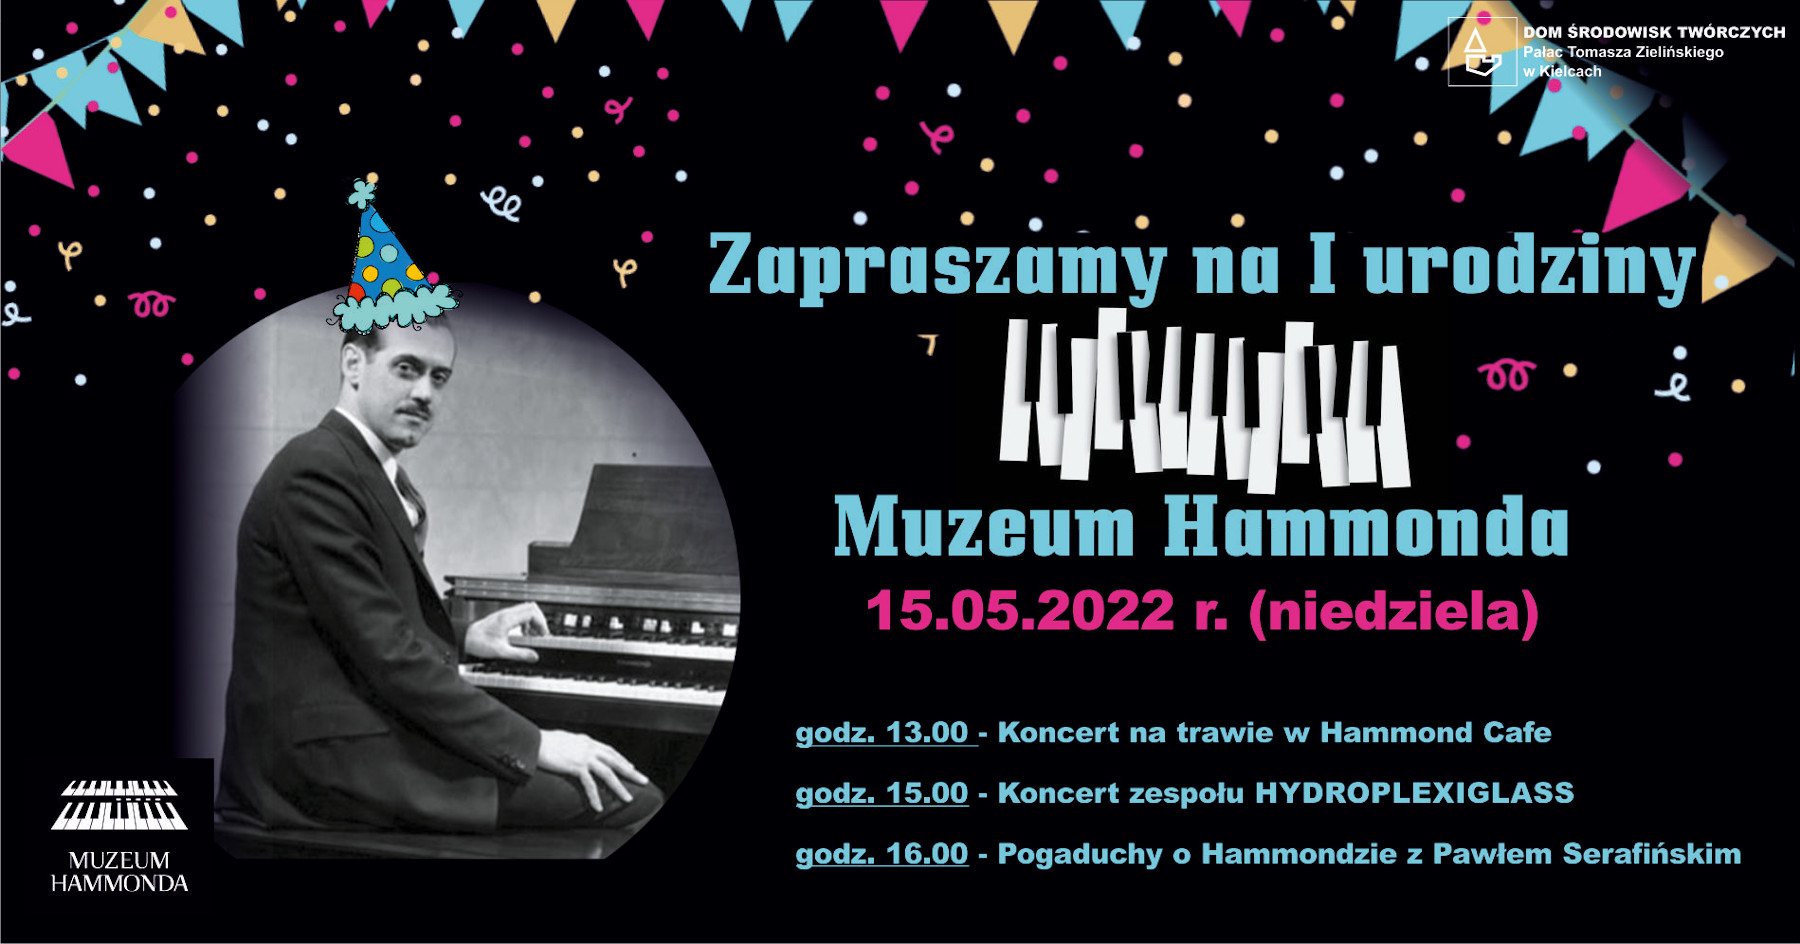 I urodziny Muzeum Hammonda w Kielcach - 15 maja 2022 r. - plakat